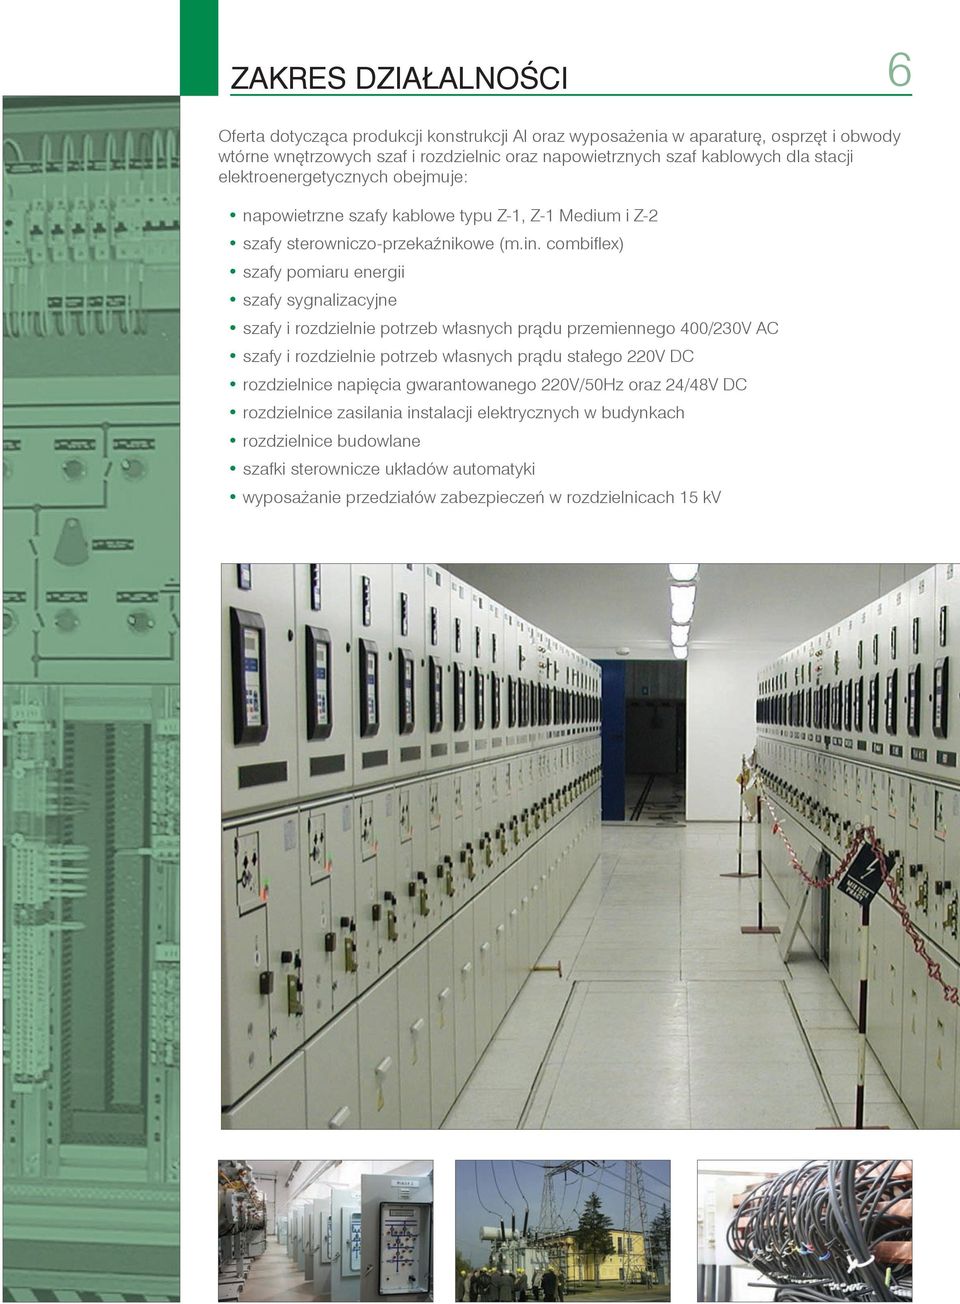 combiflex) szafy pomiaru energii szafy sygnalizacyjne szafy i rozdzielnie potrzeb własnych prądu przemiennego 400/230V AC szafy i rozdzielnie potrzeb własnych prądu stałego 220V DC